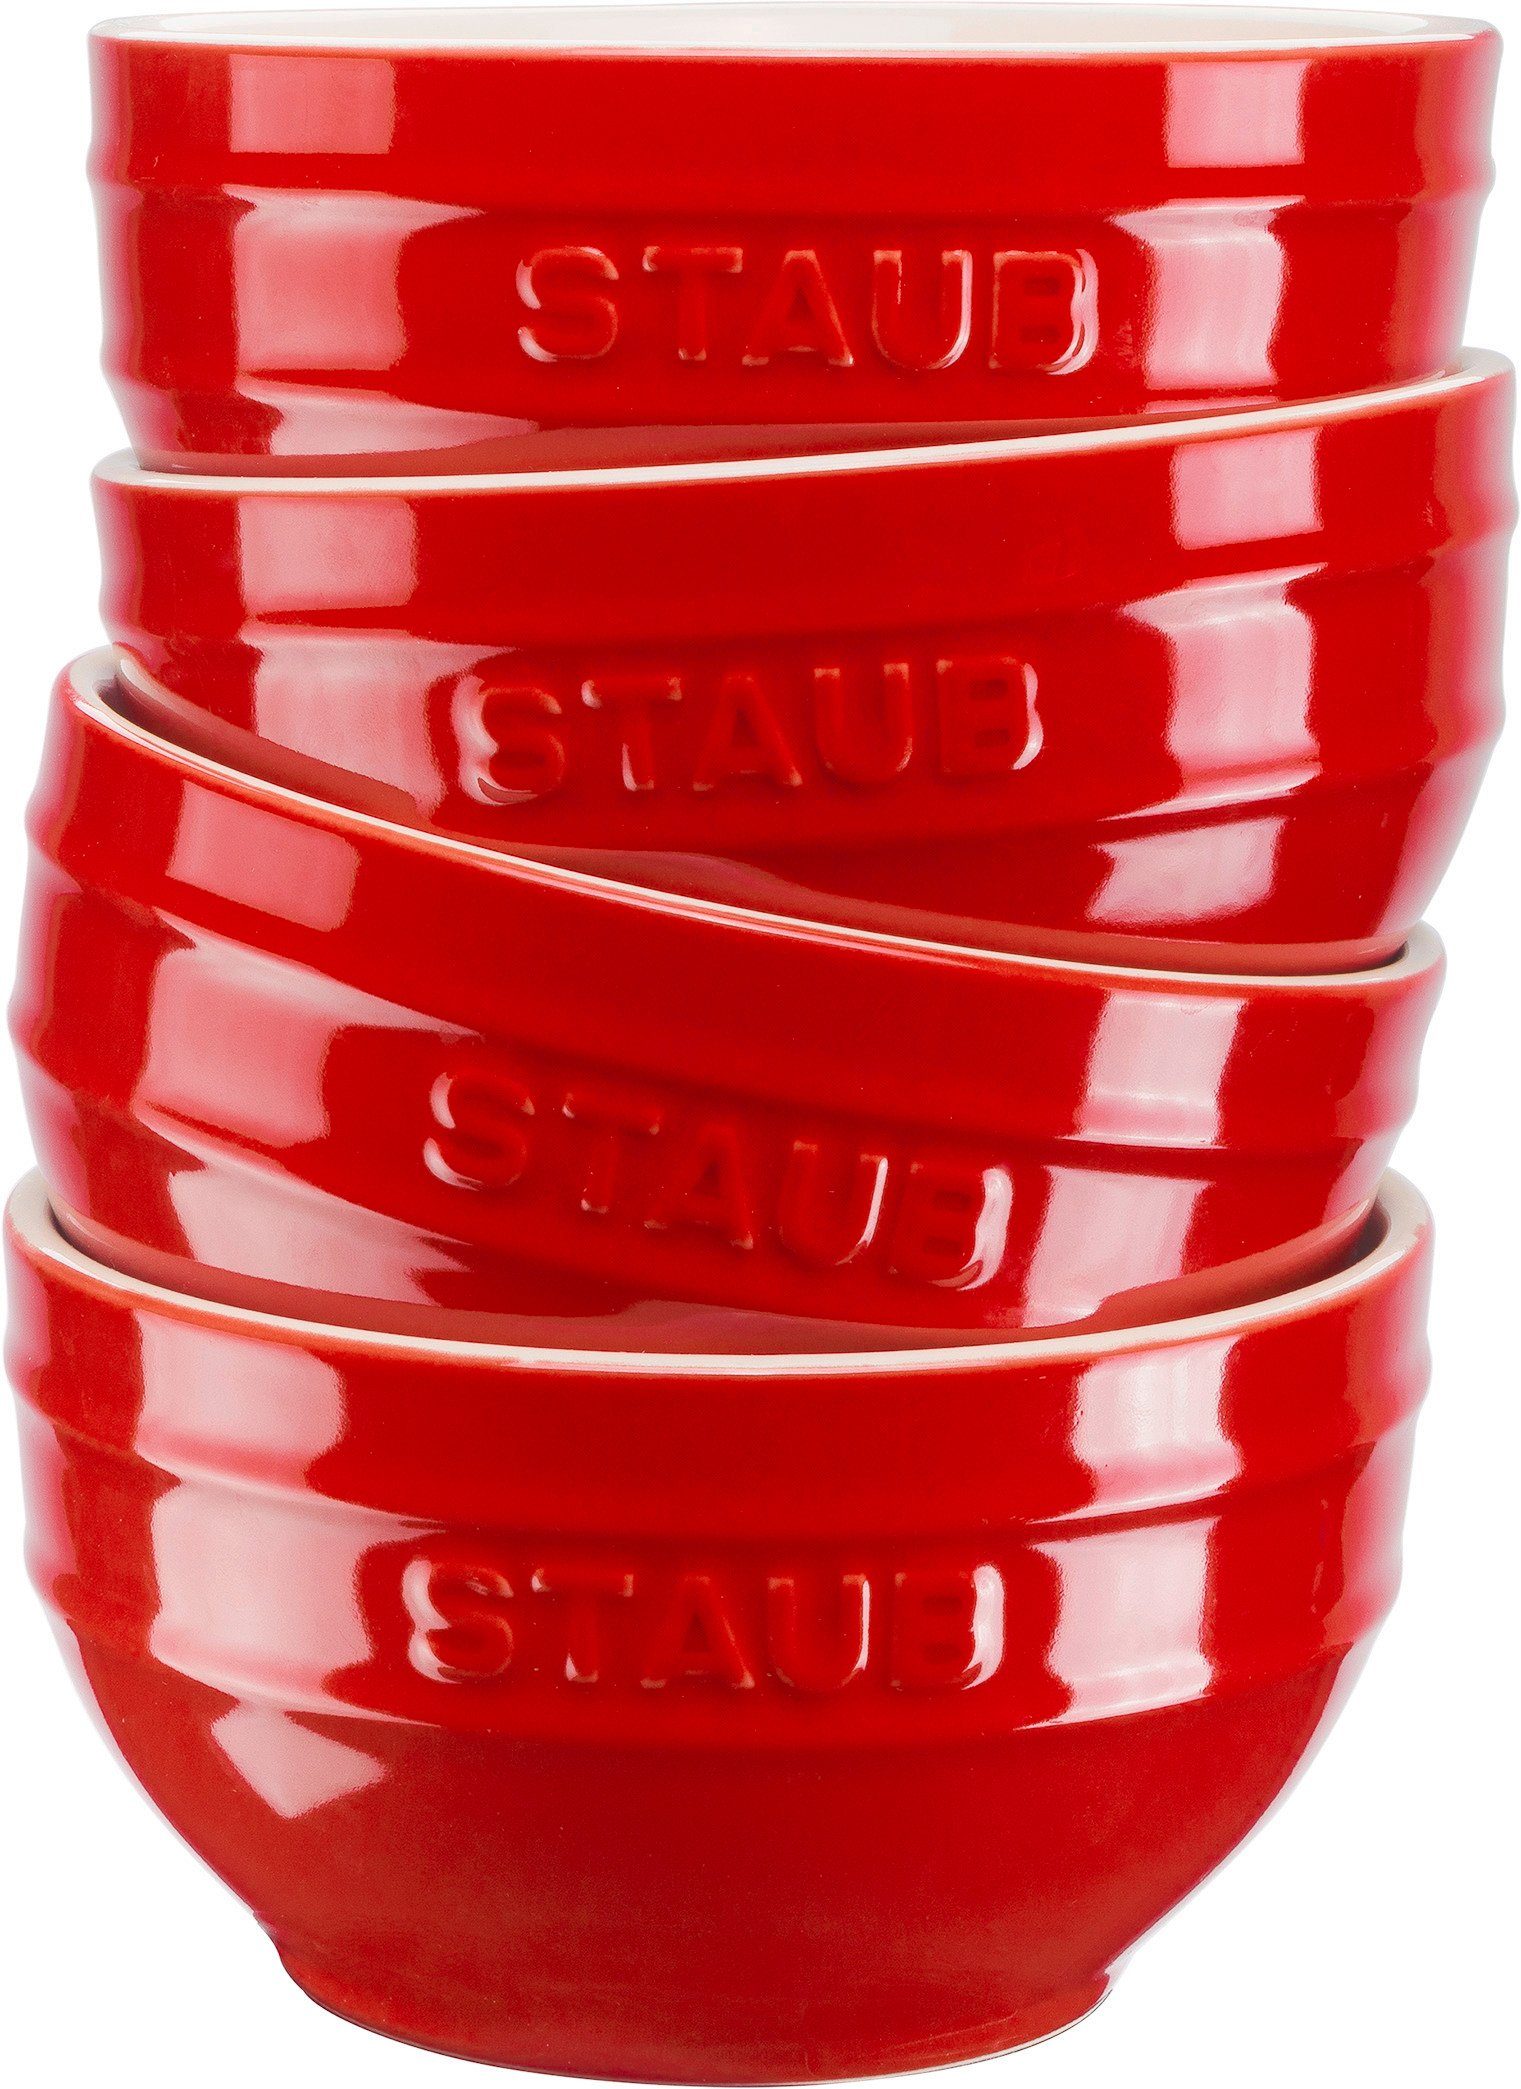 Rot Müslischüssel Schüsselset Staub STAUB Ceramique